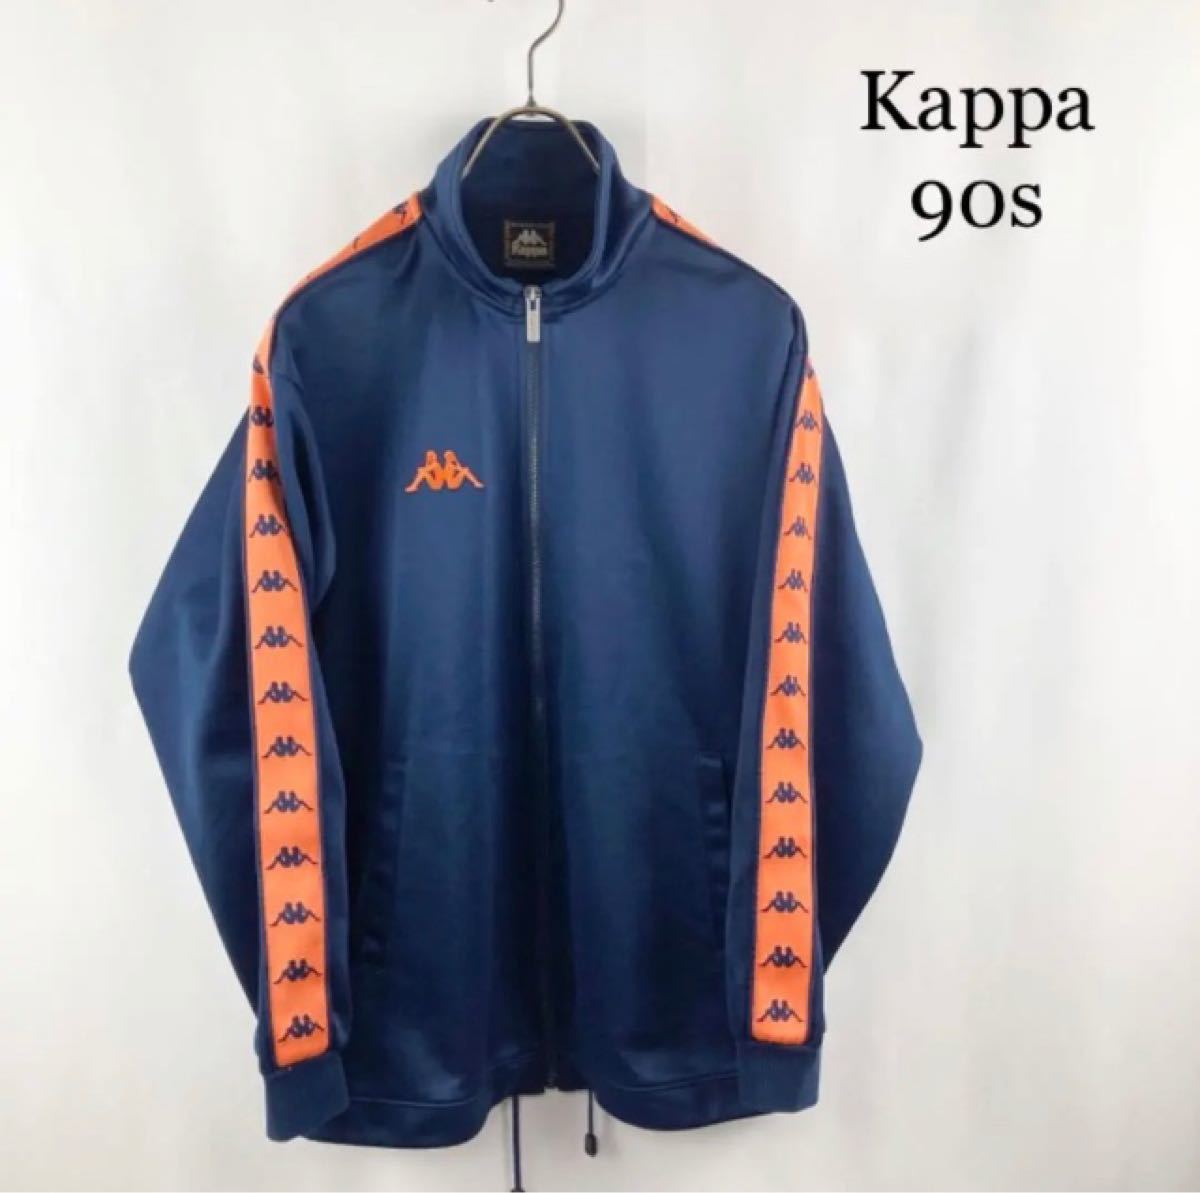 Kappa 90s ロゴライン トラックジャージ